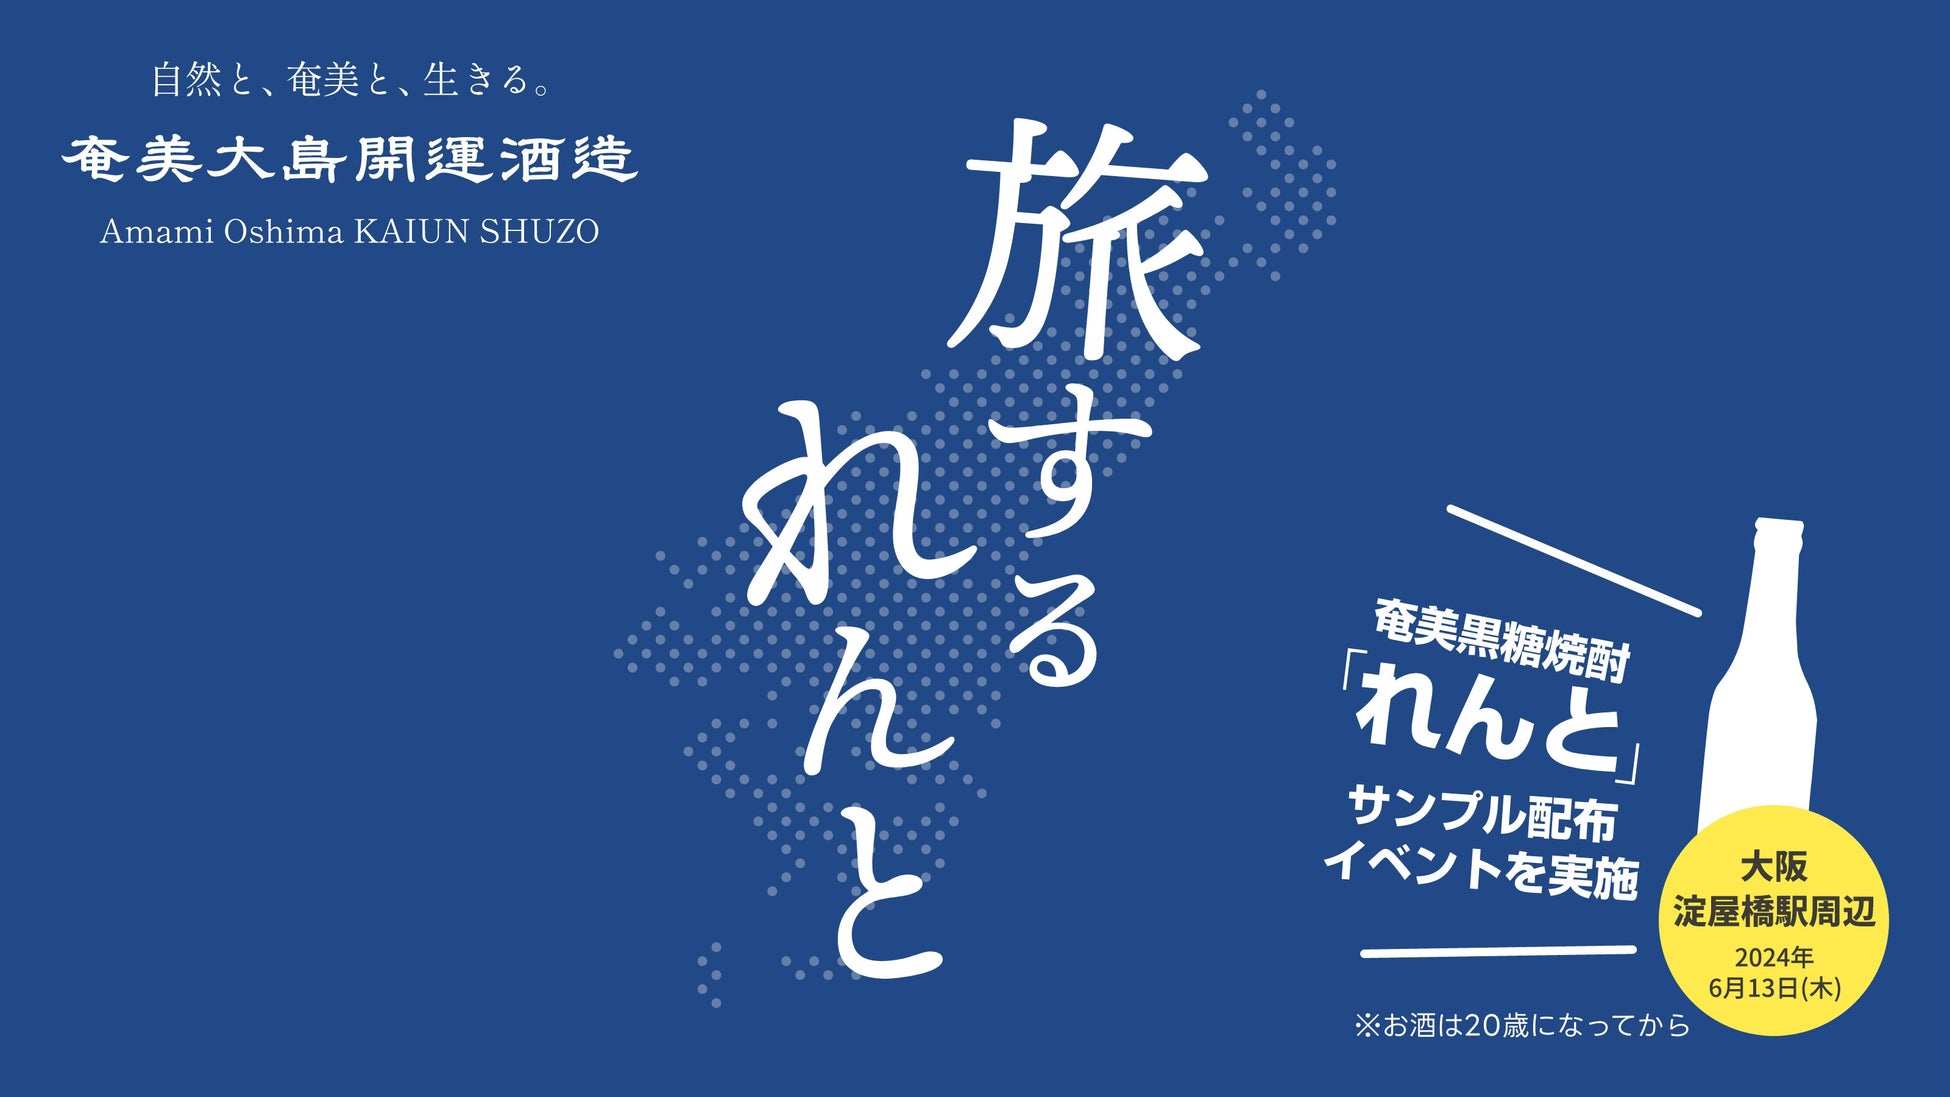 奄美黒糖焼酎『れんと』、大阪・淀屋橋駅周辺で「旅するれんと in 大阪」特別イベントを実施